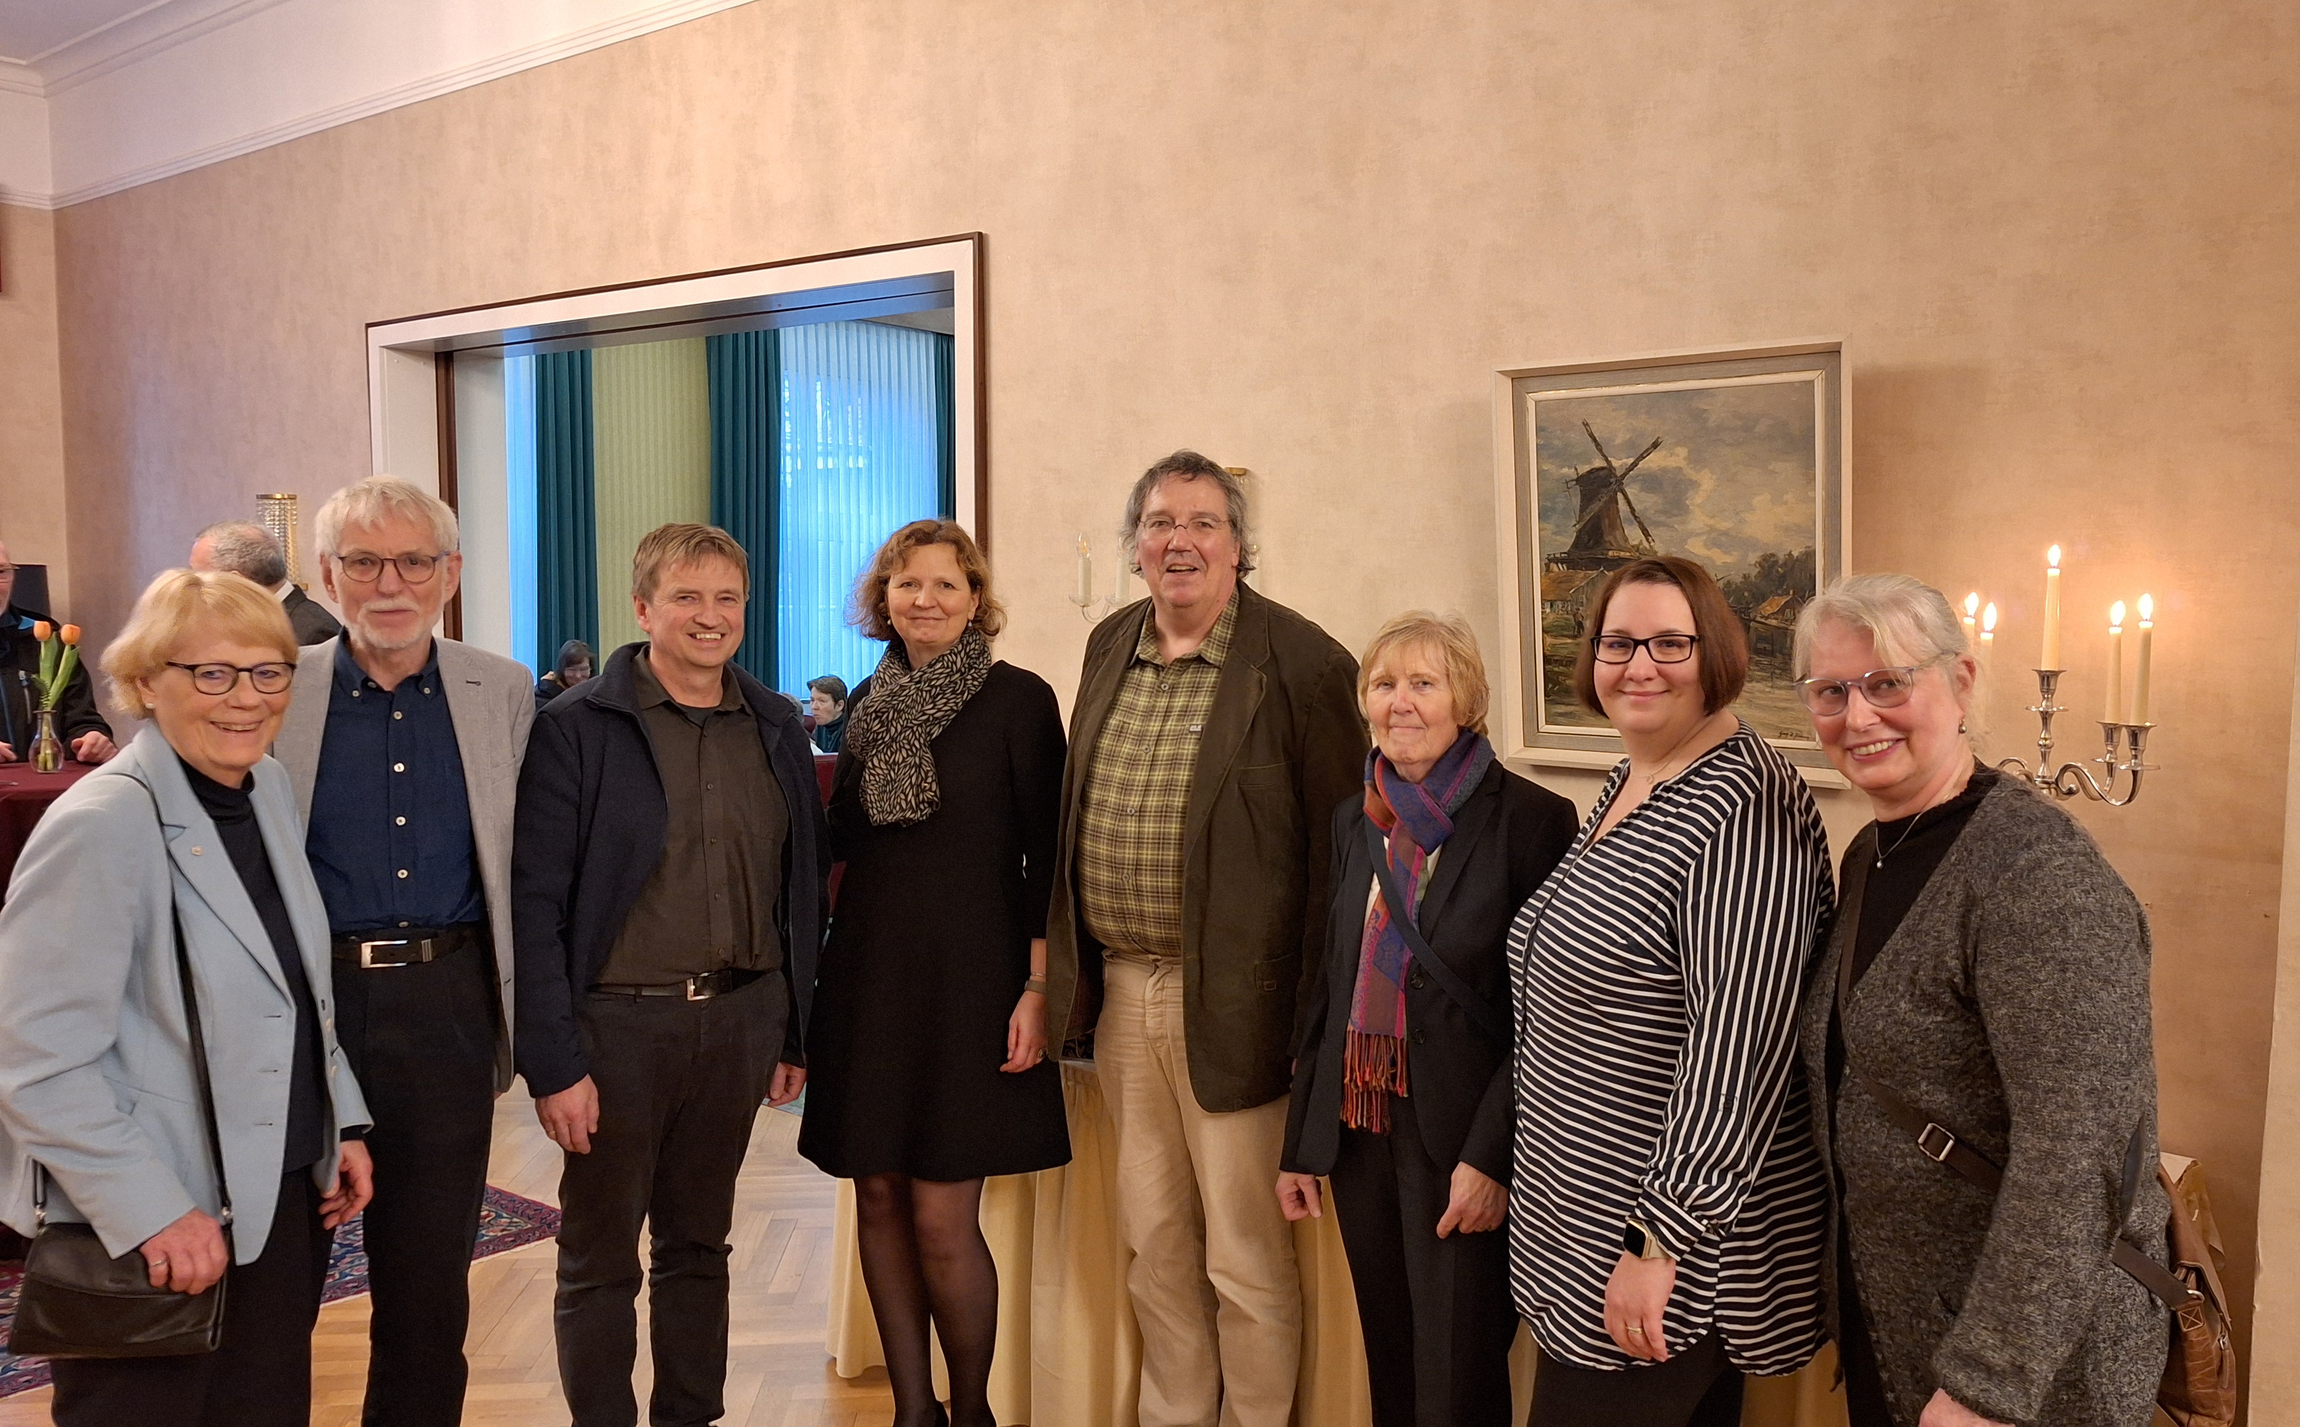 Die Delegation aus dem Kirchenkreis Stolzenau-Loccum gratuliert Sabine Schiermeyer zur Einführung